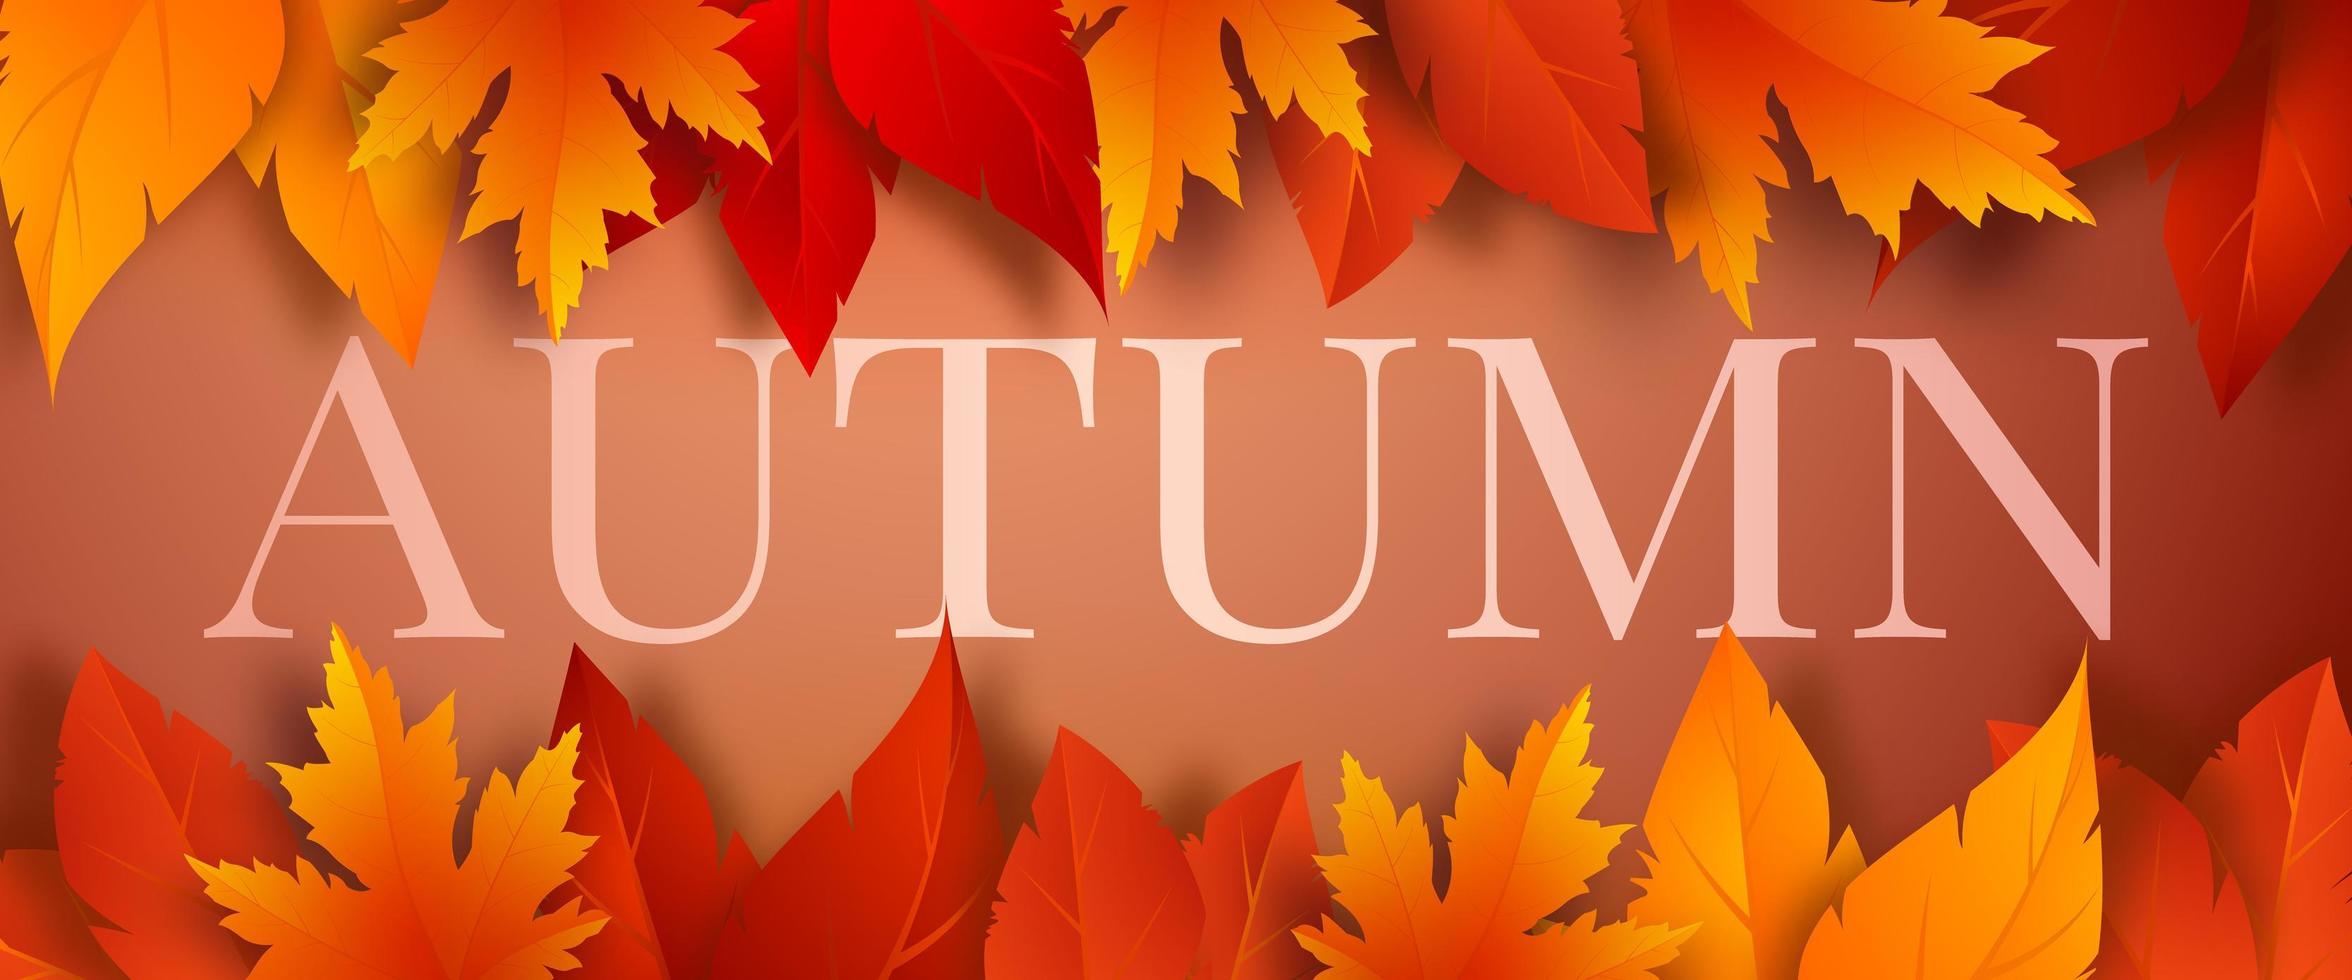 modèle de bannière de saison d'automne avec des feuilles d'automne rouges, jaunes et orange sur fond marron. conception pour carte de voeux, publicité, bannière web, flyer. illustration vectorielle. vecteur